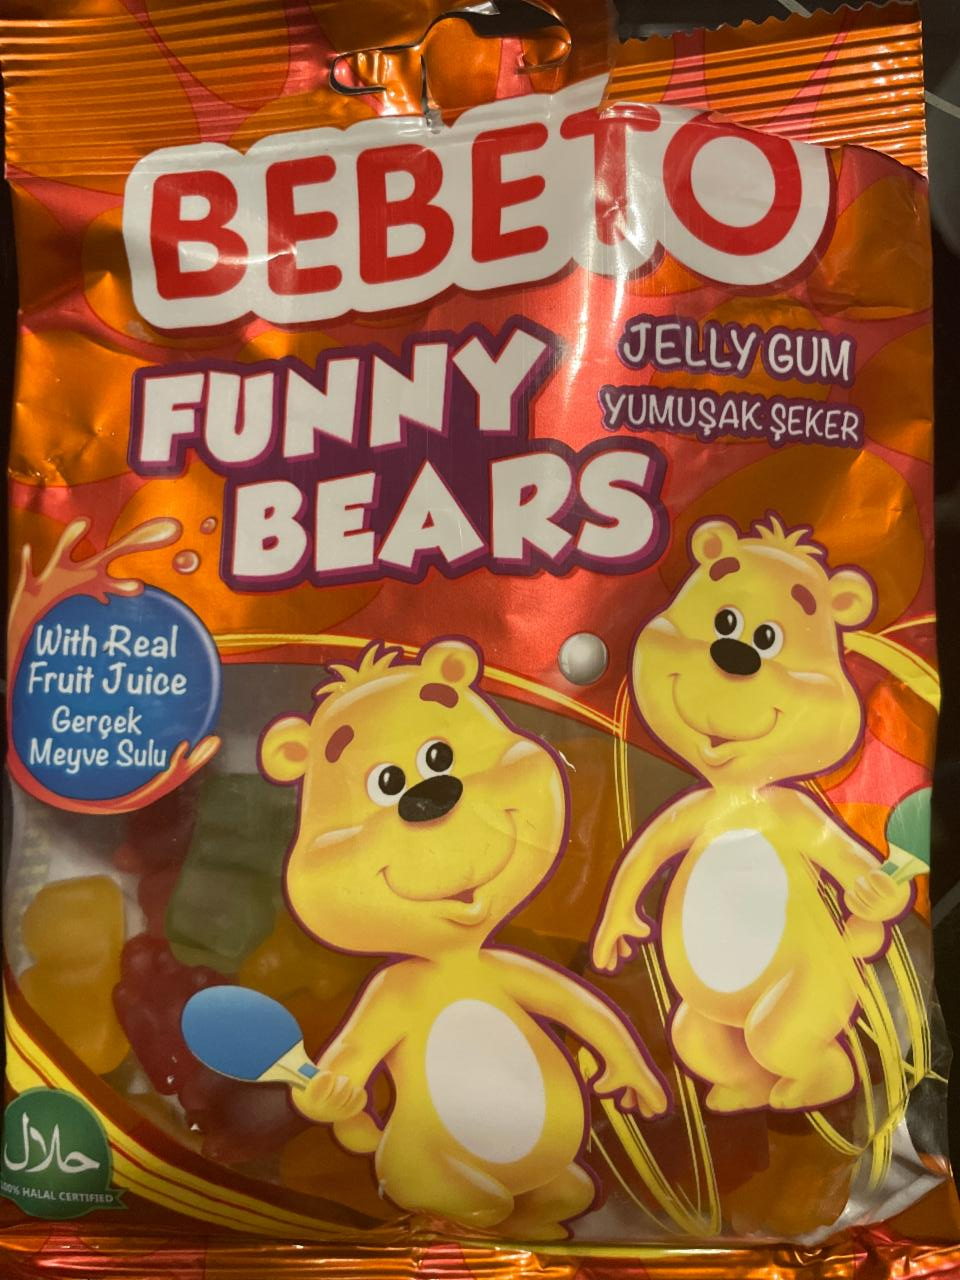 Fotografie - Funny Bears Bebeto